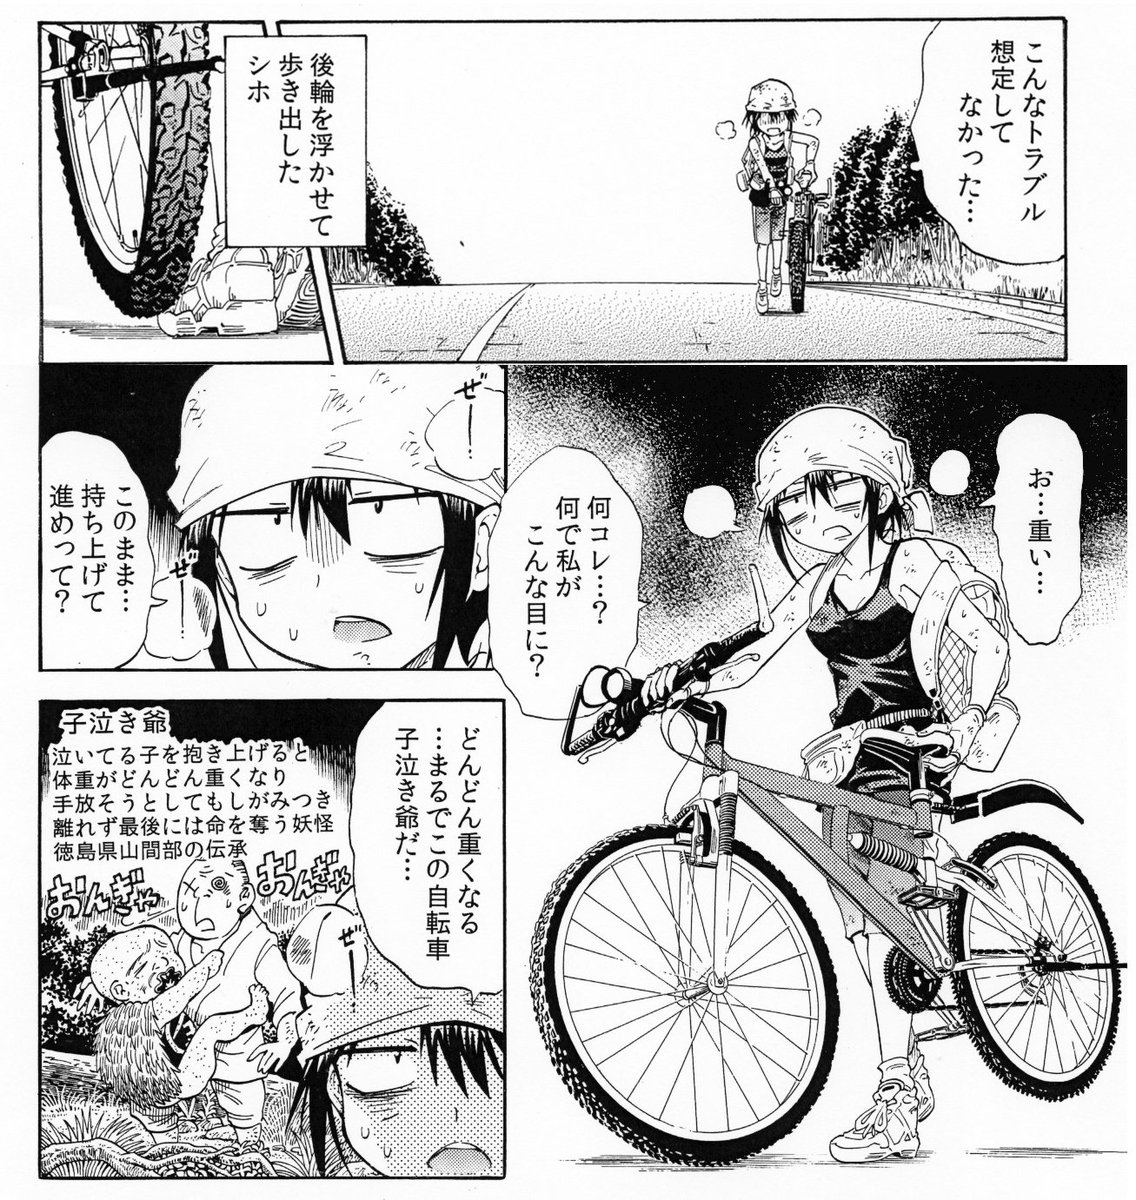 実話です　青森恐山に向かう途中であったことです　自転車のる人はゾッとすると思う 